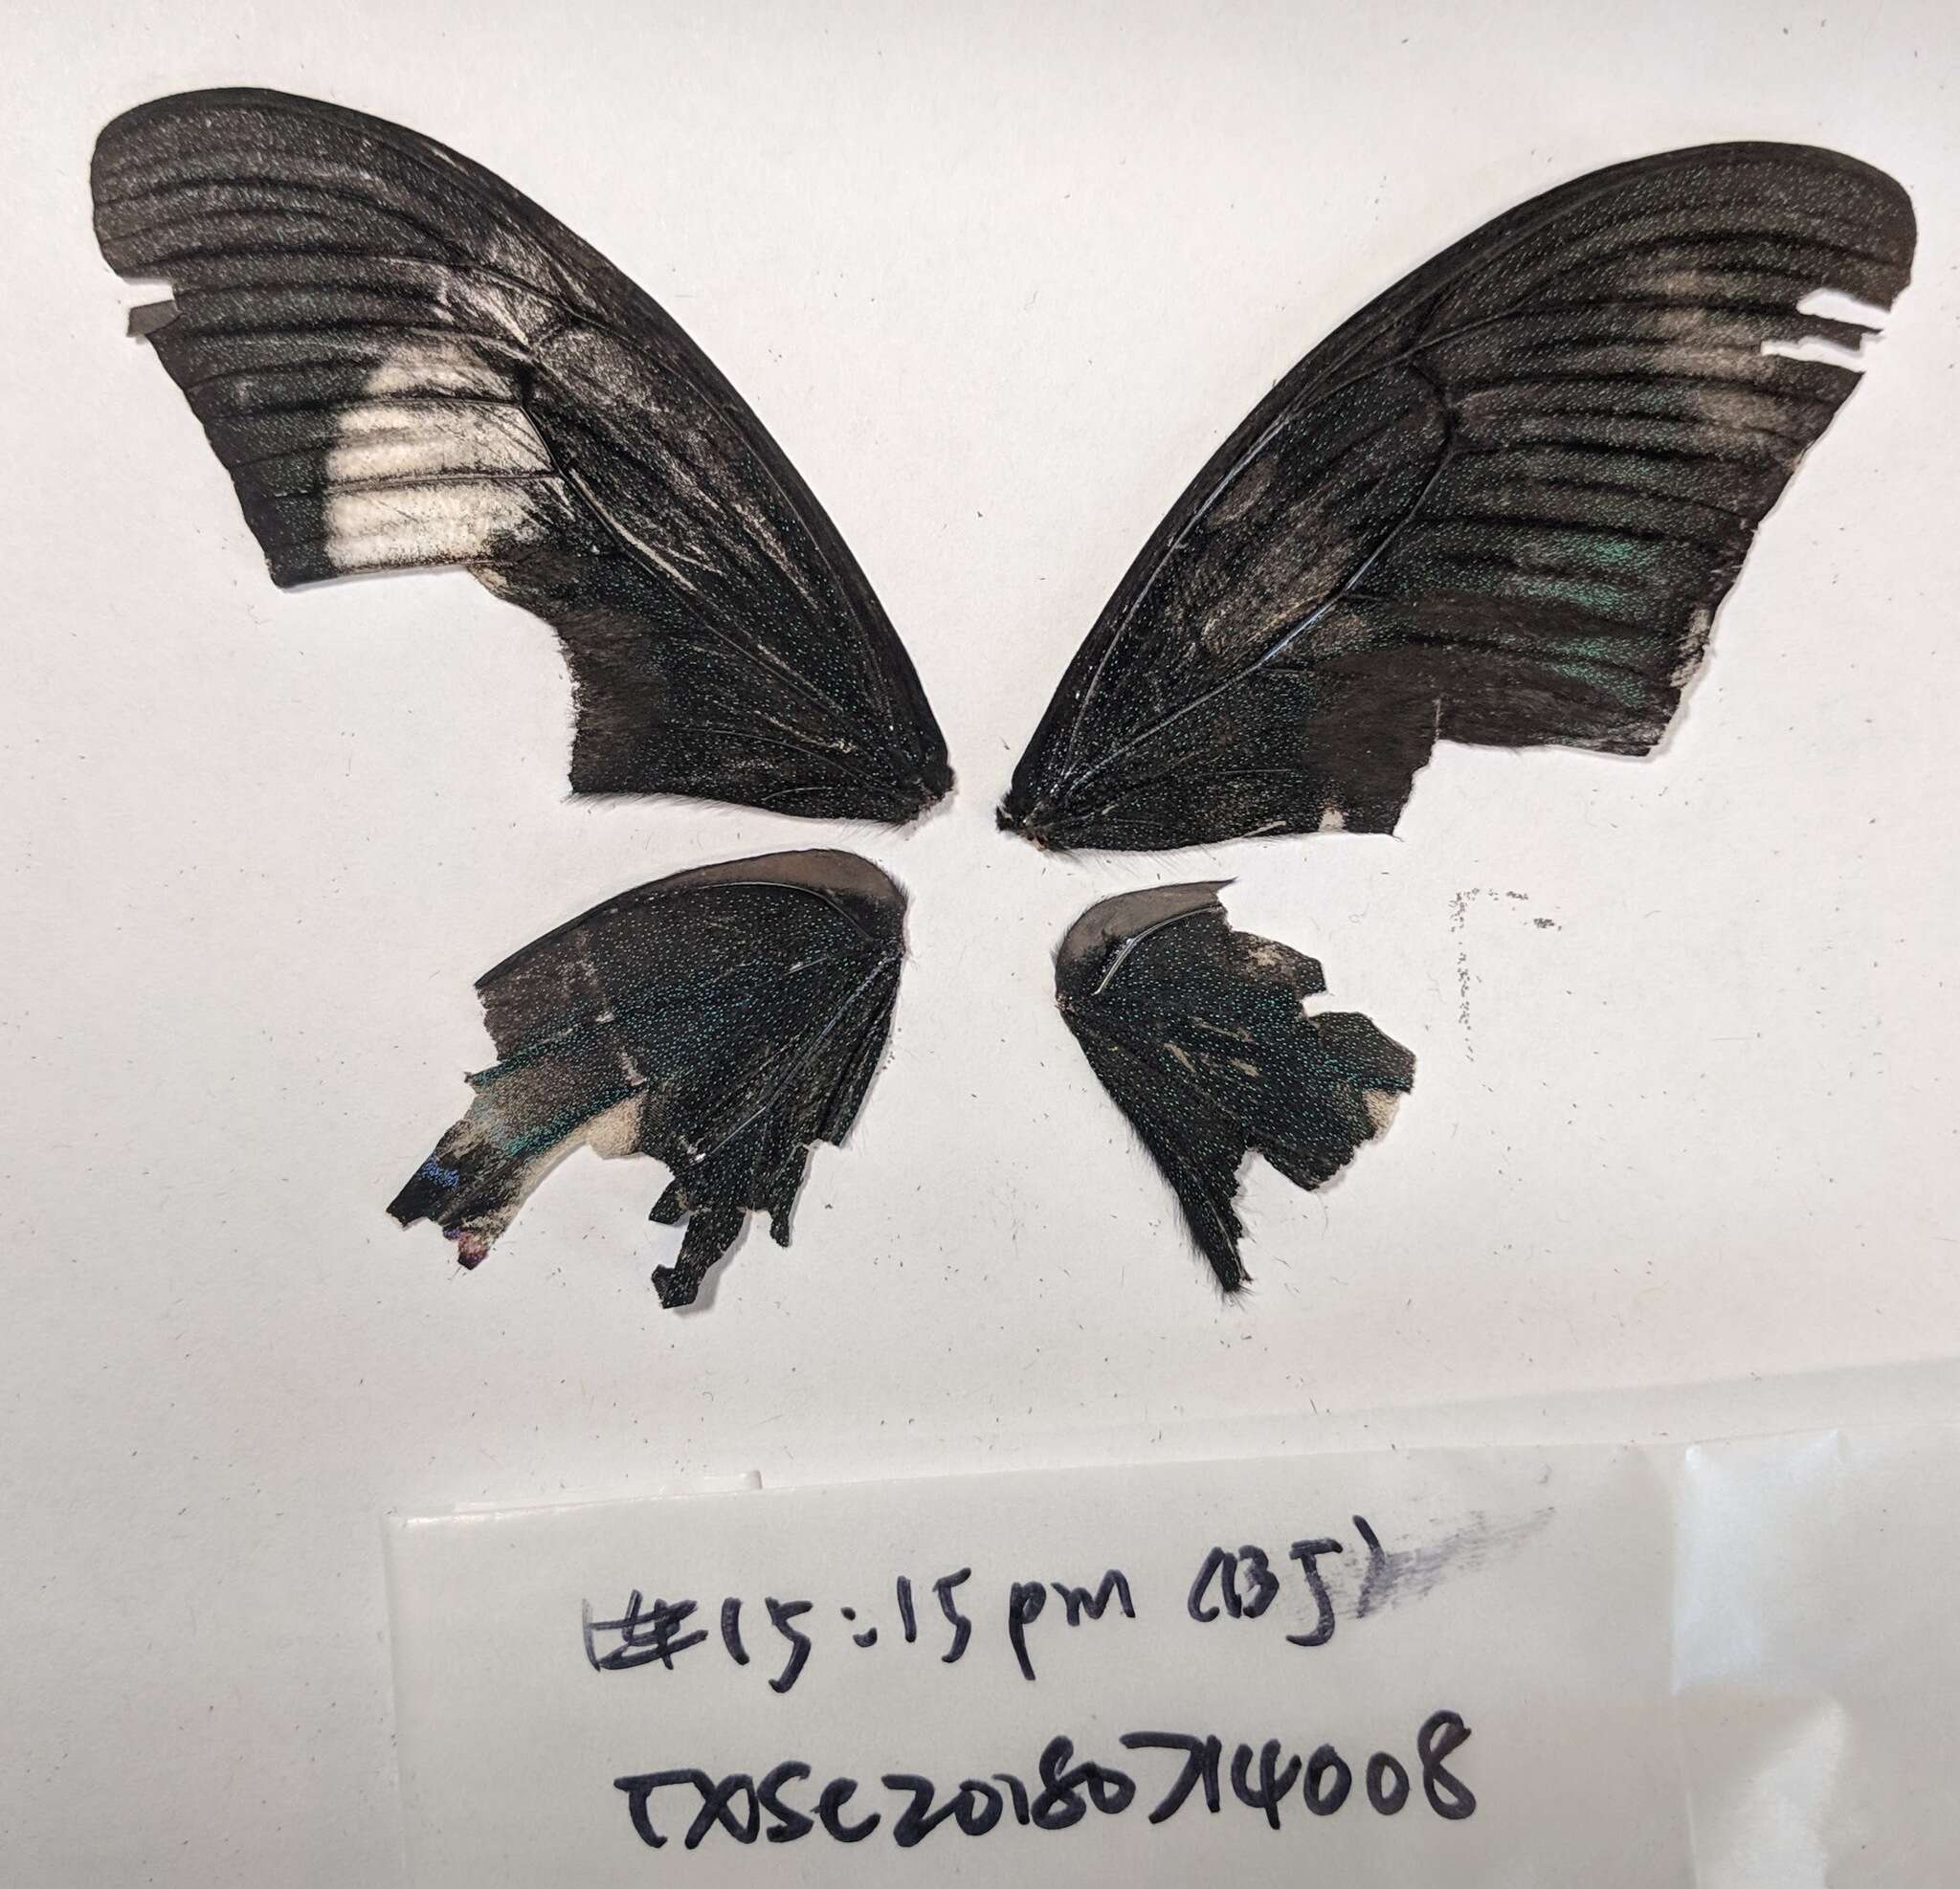 Image of Papilio syfanius Oberthür 1886